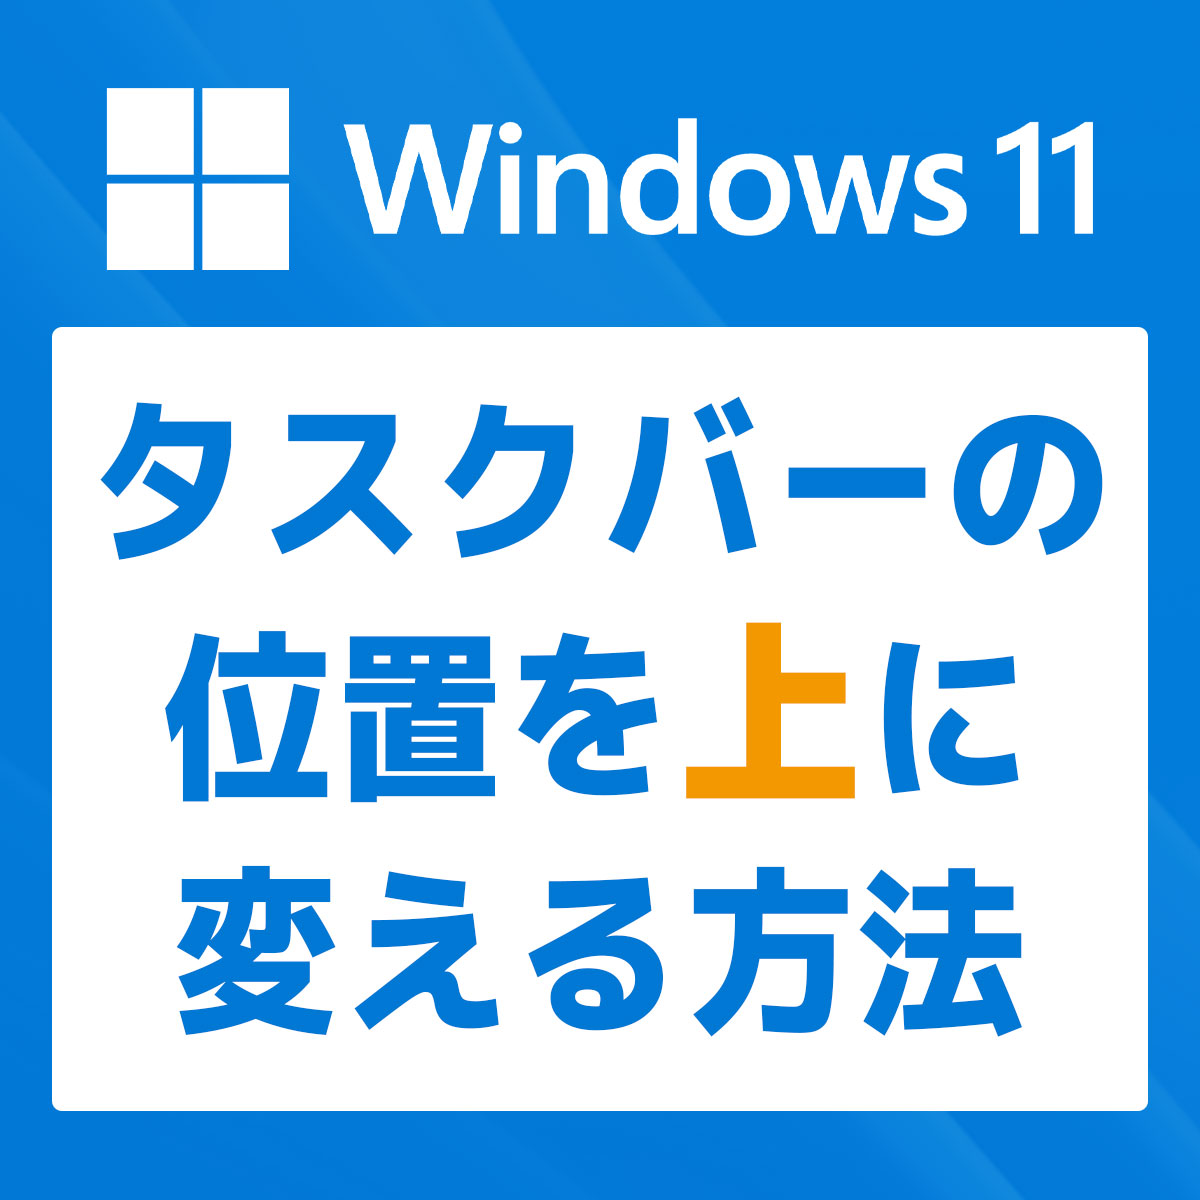 【Windows 11】タスクバーの位置を上に移動する方法